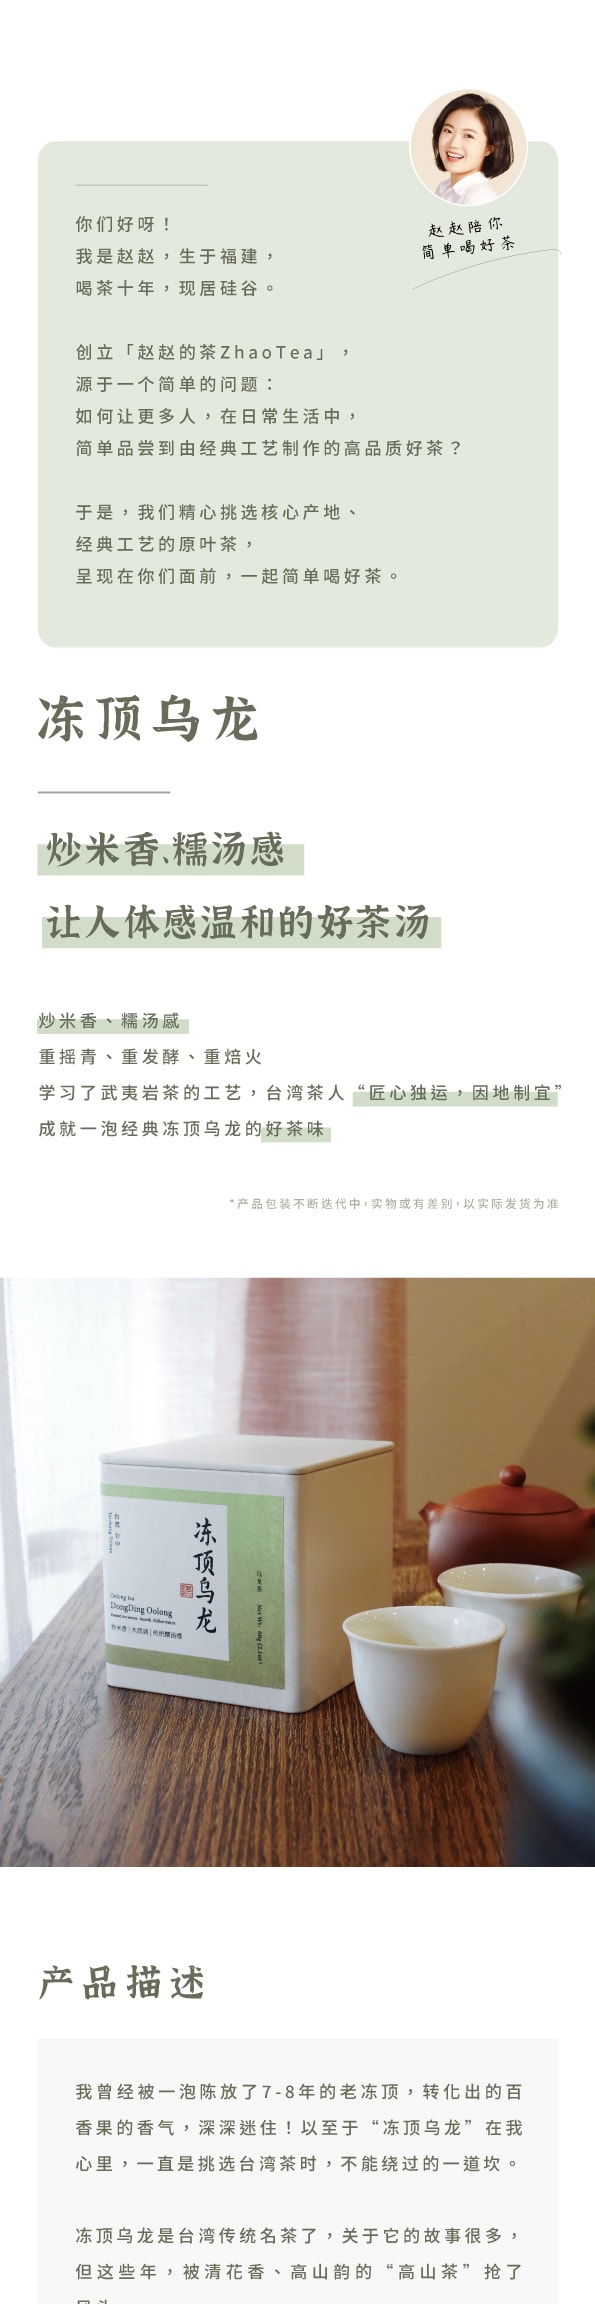 美国 赵赵的茶 ZhaoTea 冻顶乌龙 台湾台中 经典乌龙茶 炒米香 汤感温和 试饮三连泡 15g (5gx3)